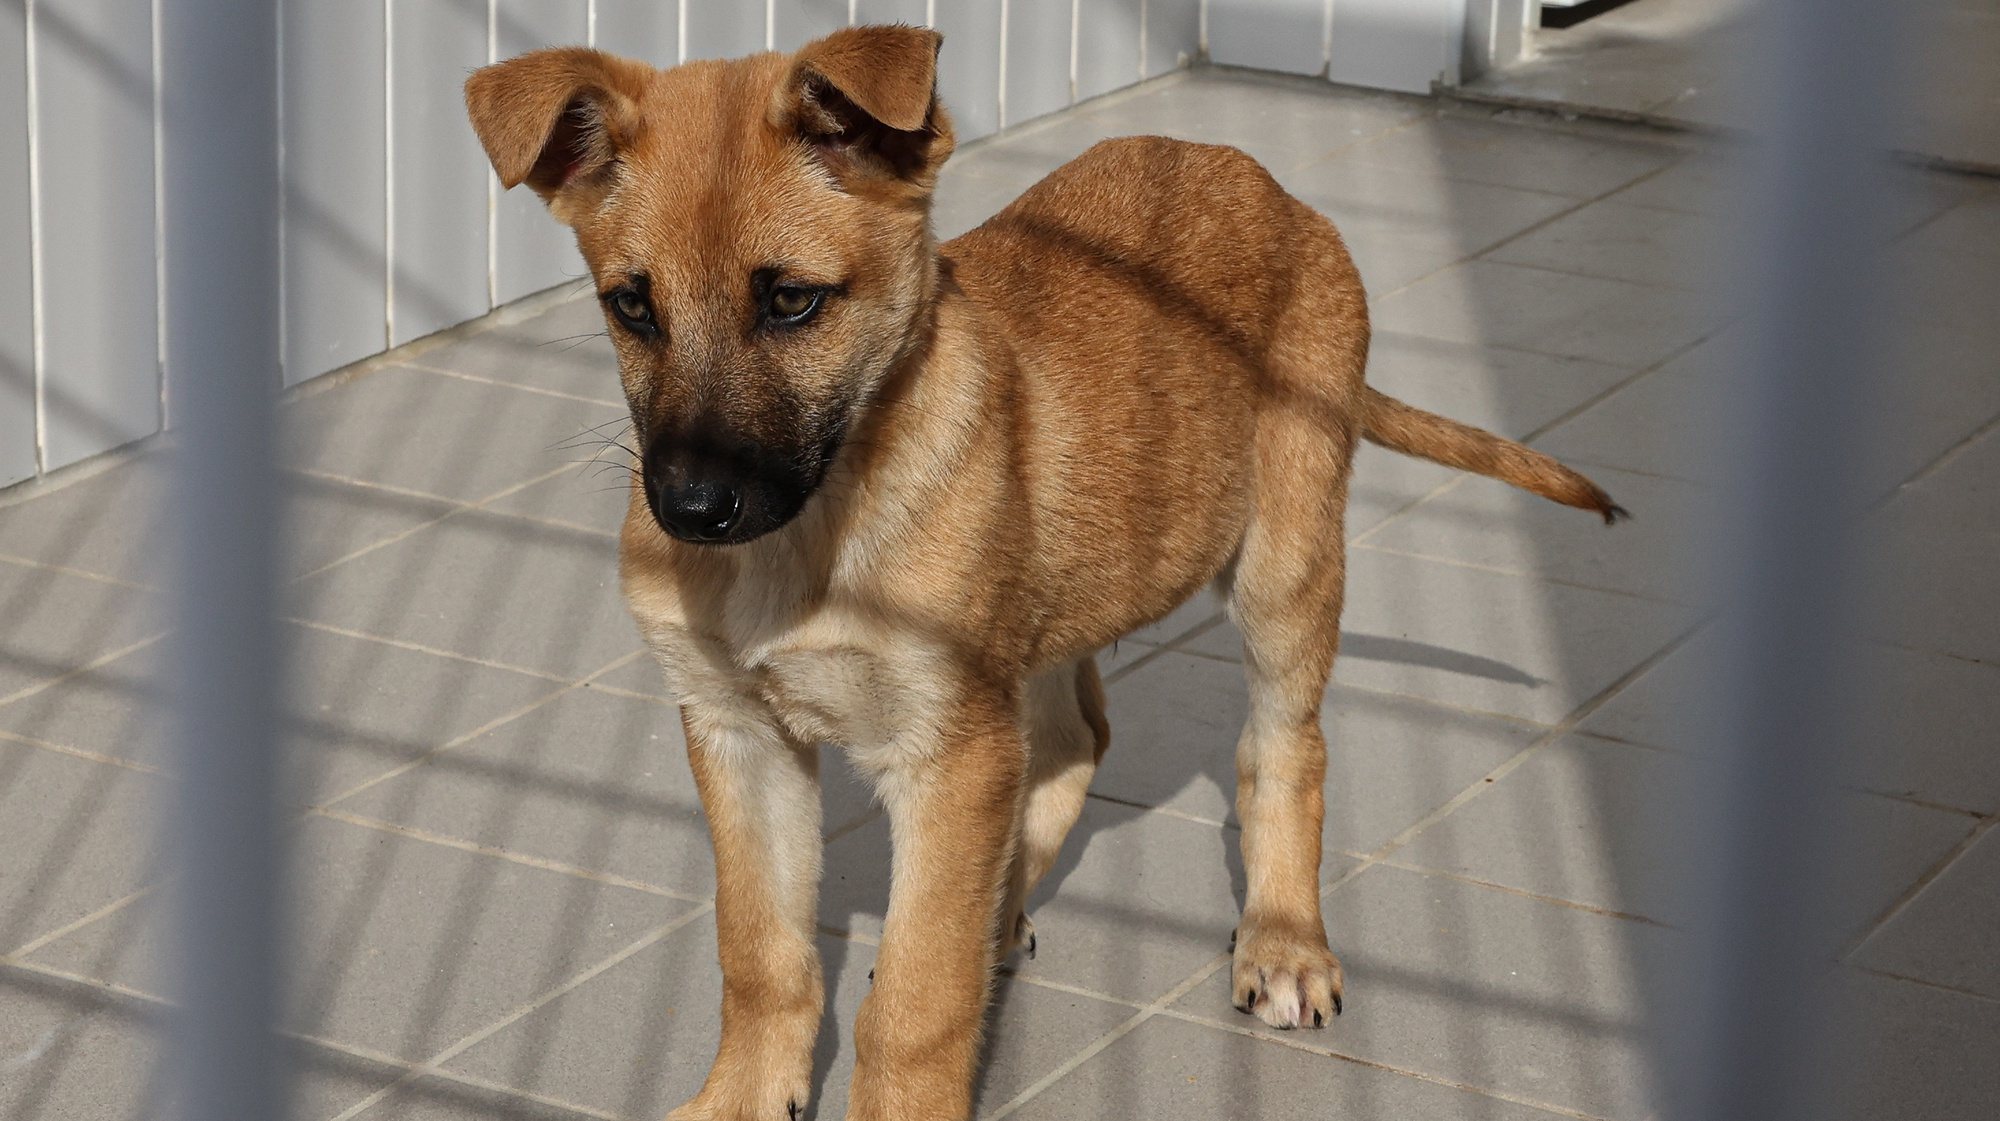 Inauguração do CROAF - Centro de Recolha Oficial de Animais de Faro, hoje em Guilhim, Estoi, e que vai dar abrigo a 173 cães e gatos,abandonados no concelho de Faro, 16 de janeiro de 2023. LUÍS FORRA/LUSA